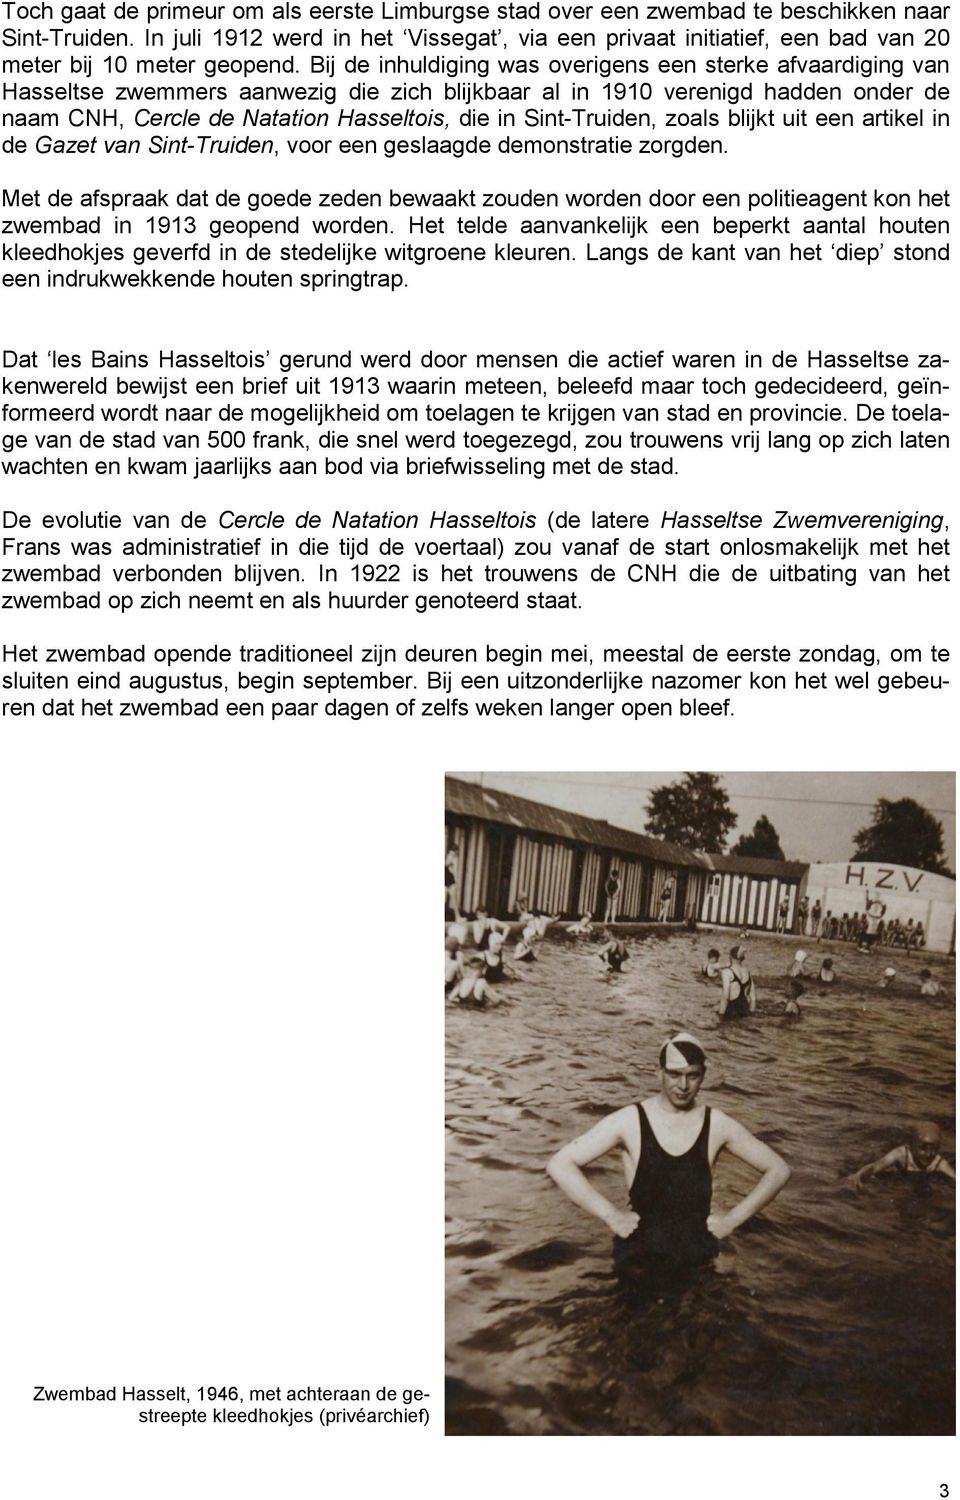 Bij de inhuldiging was overigens een sterke afvaardiging van Hasseltse zwemmers aanwezig die zich blijkbaar al in 1910 verenigd hadden onder de naam CNH, Cercle de Natation Hasseltois, die in